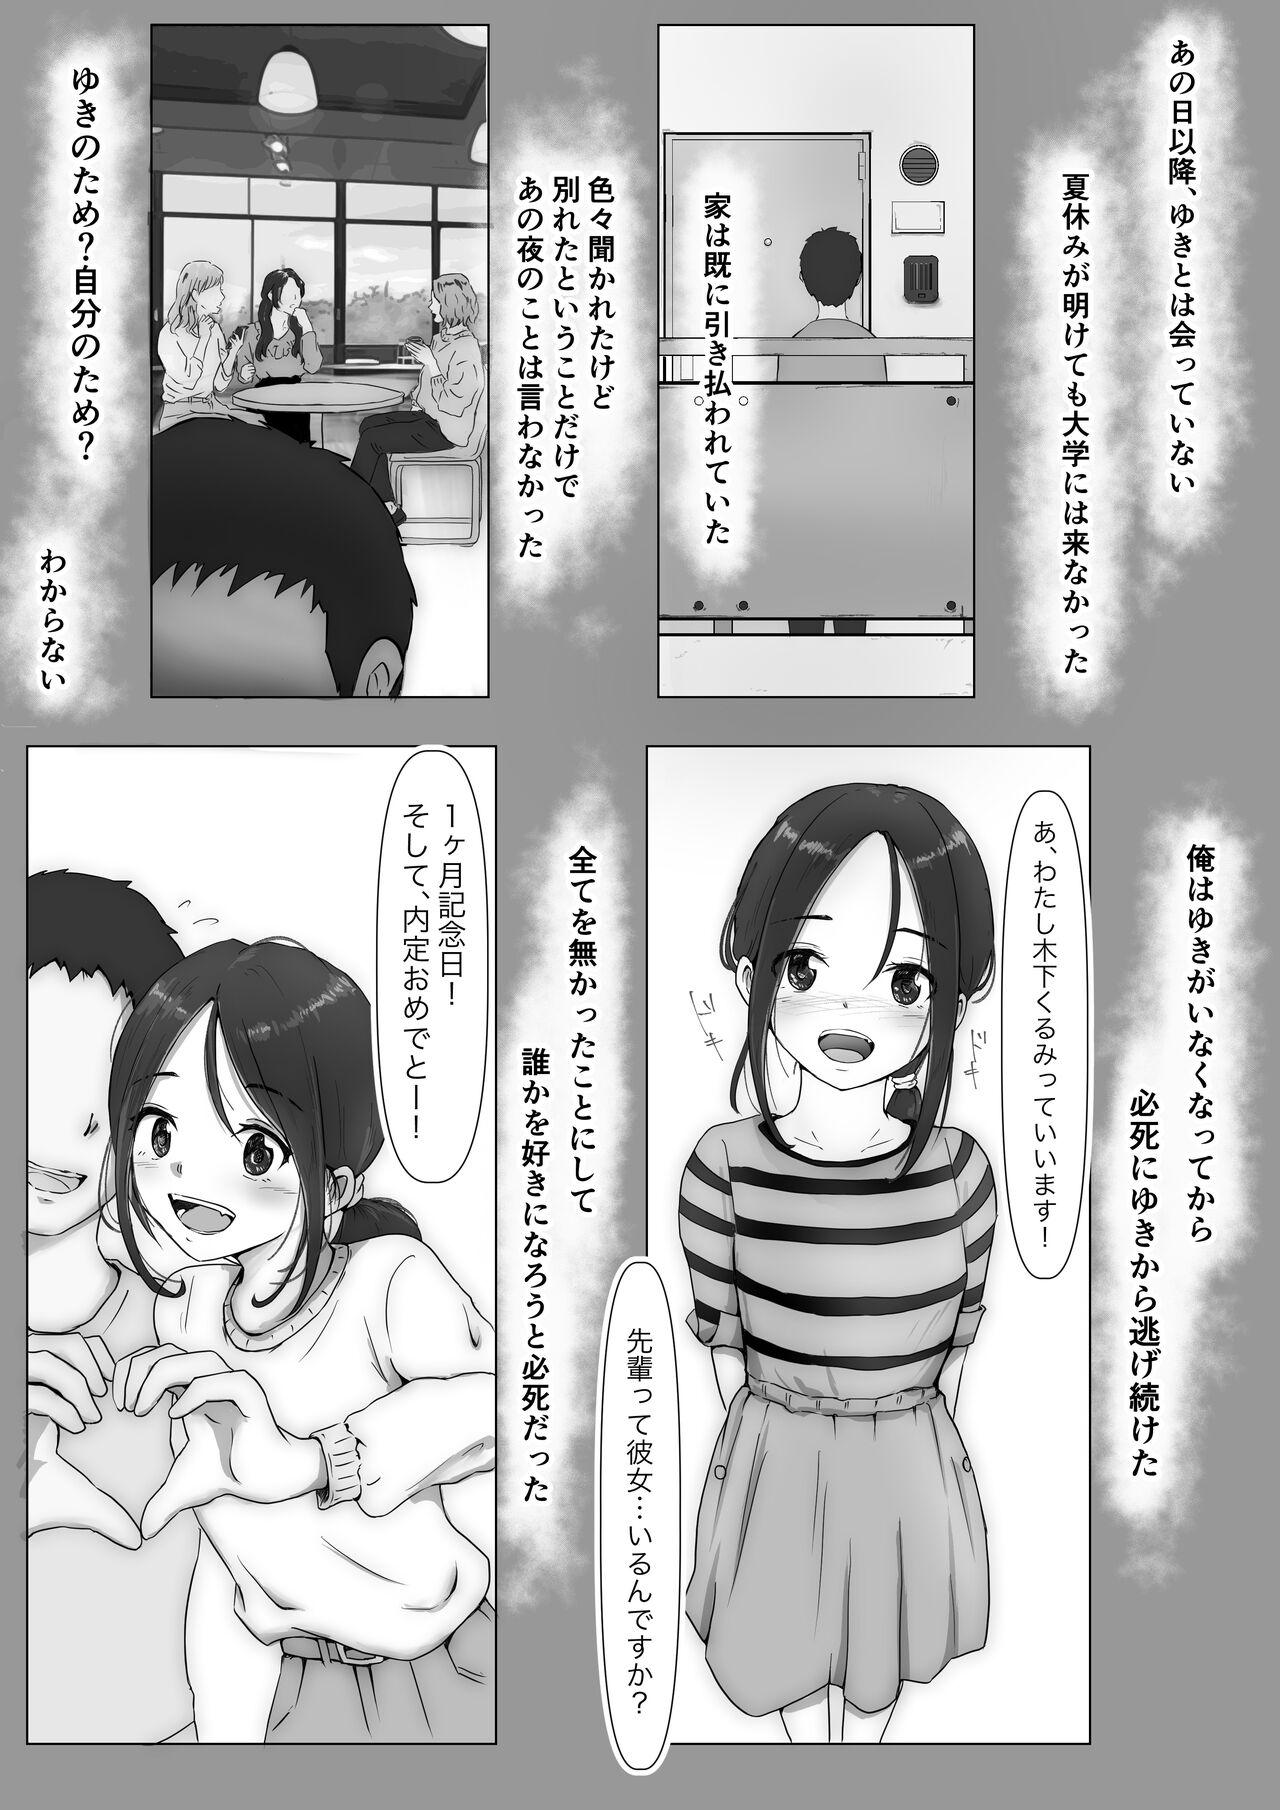 Dorm Honto no Kanojo 3 - Original Teenporno - Page 3